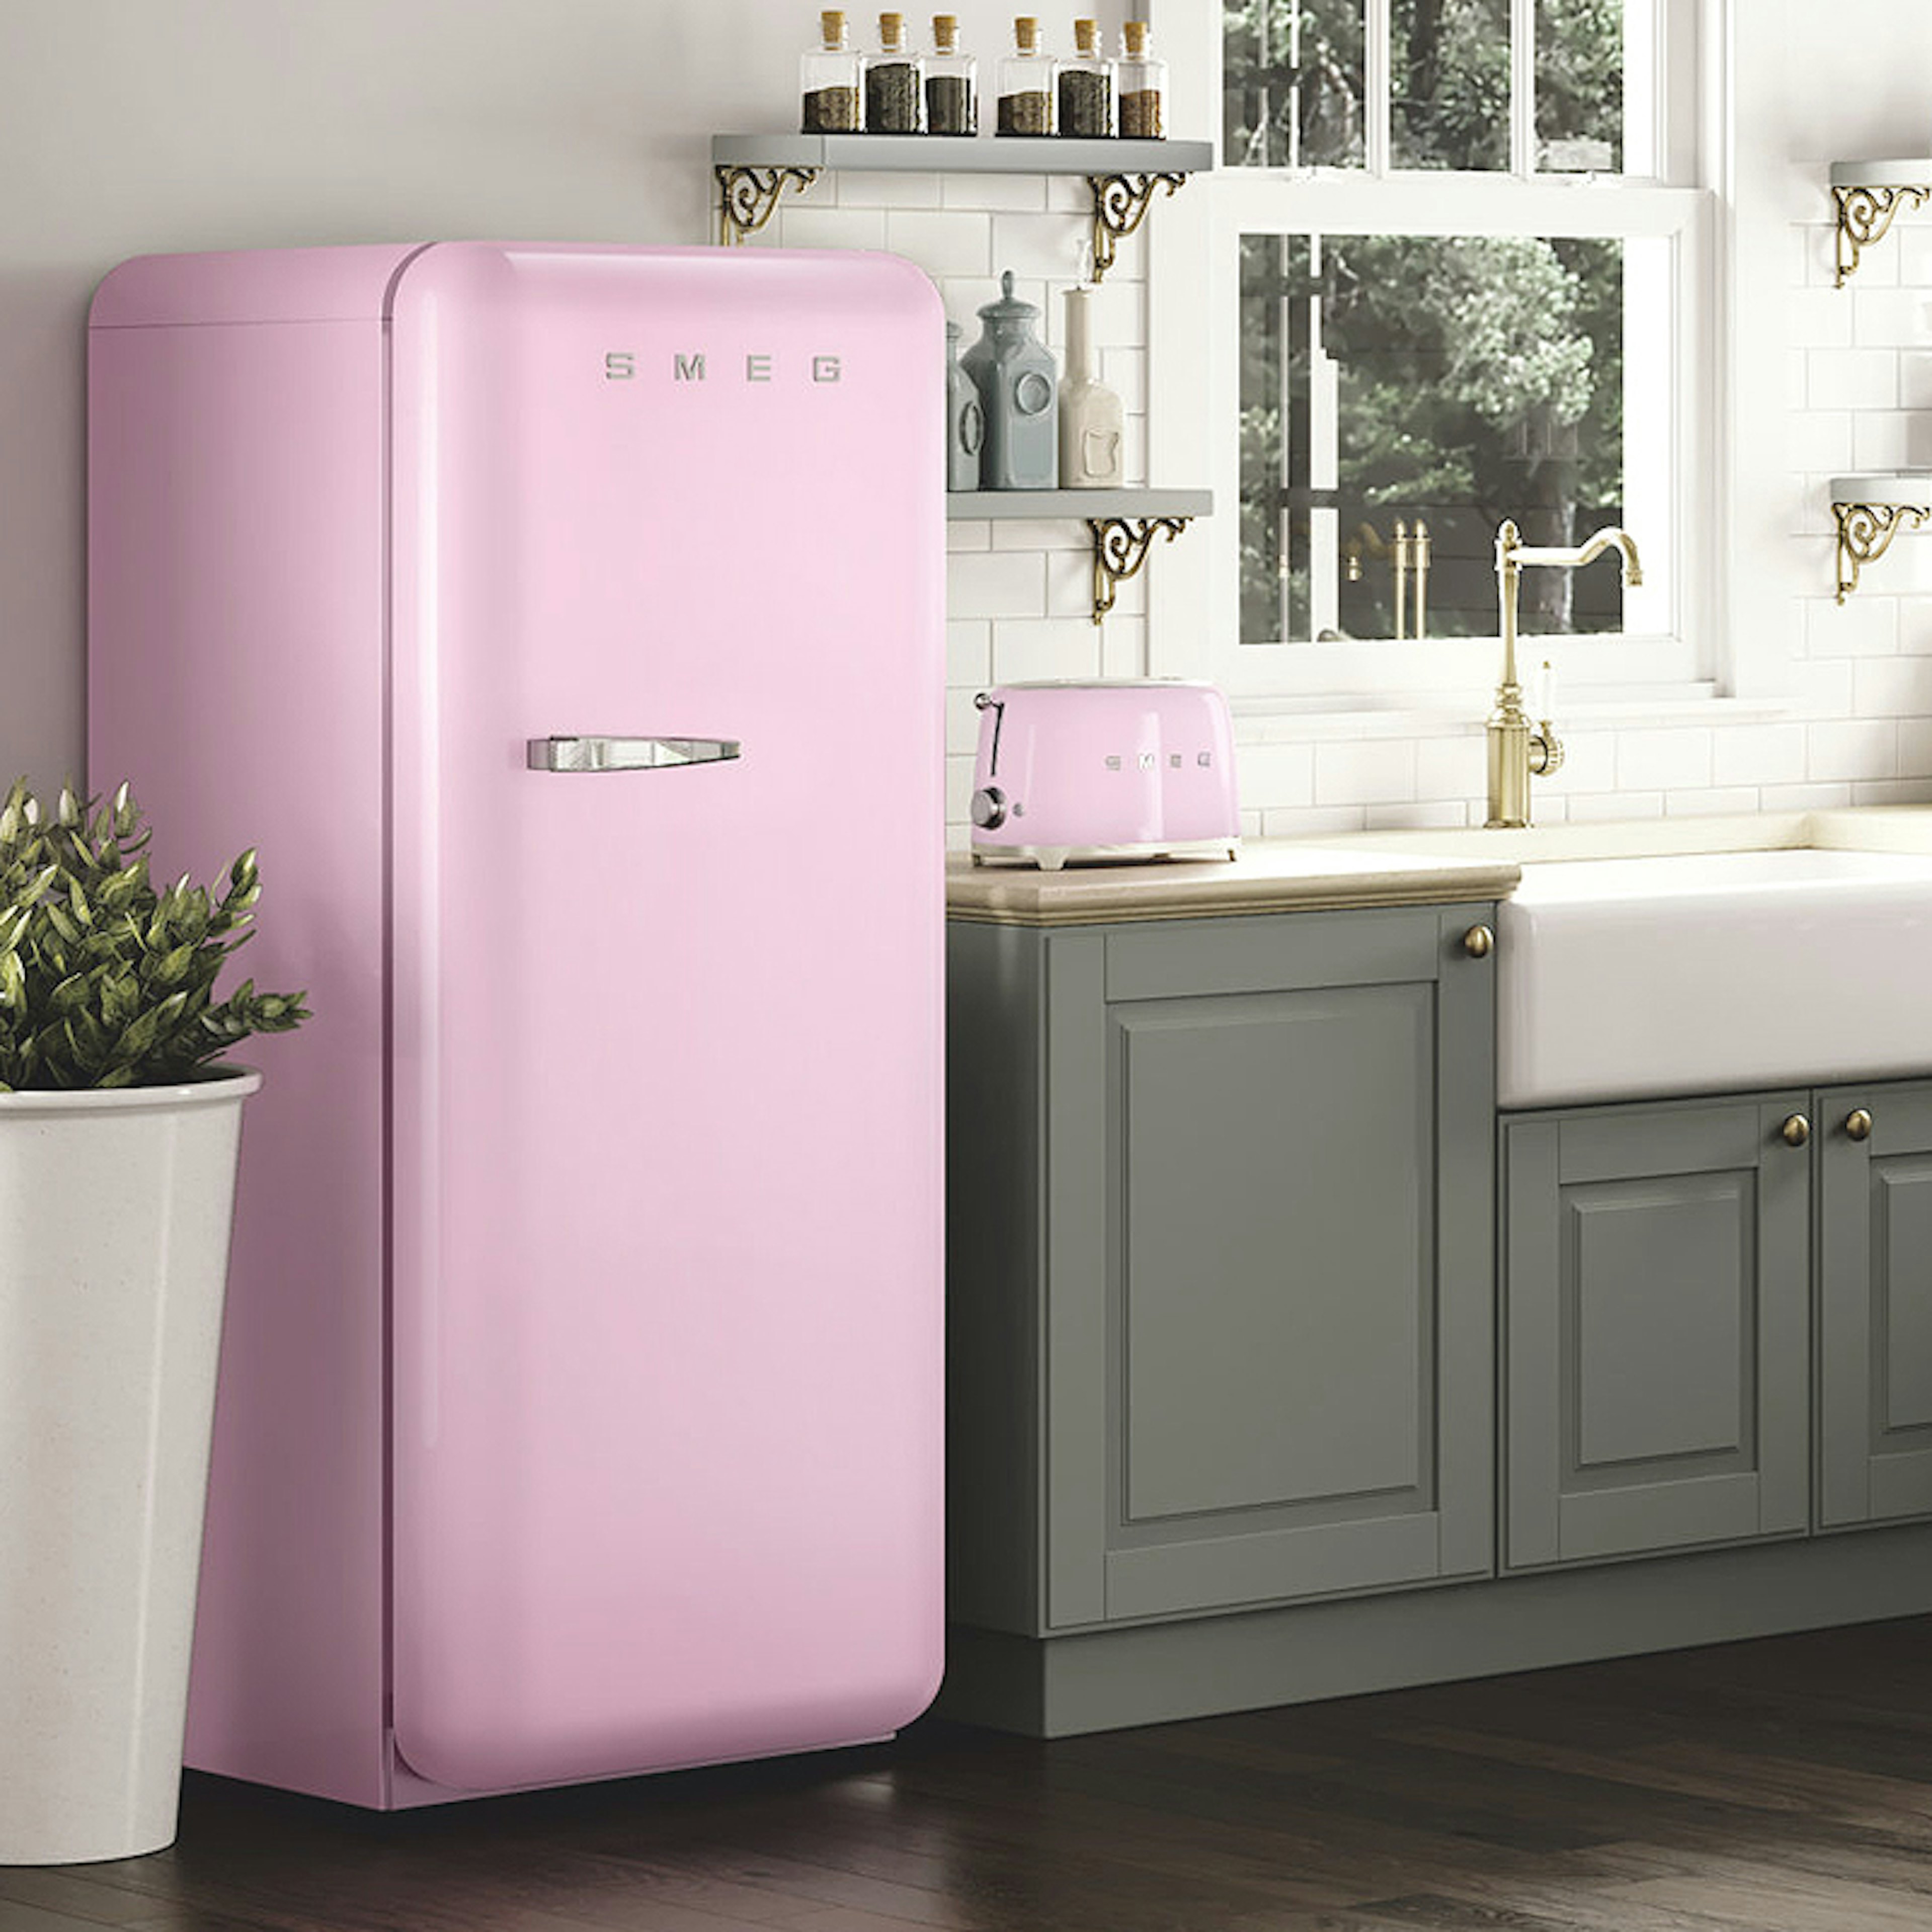 Roze keukenapparatuur: Vintage koelkast.